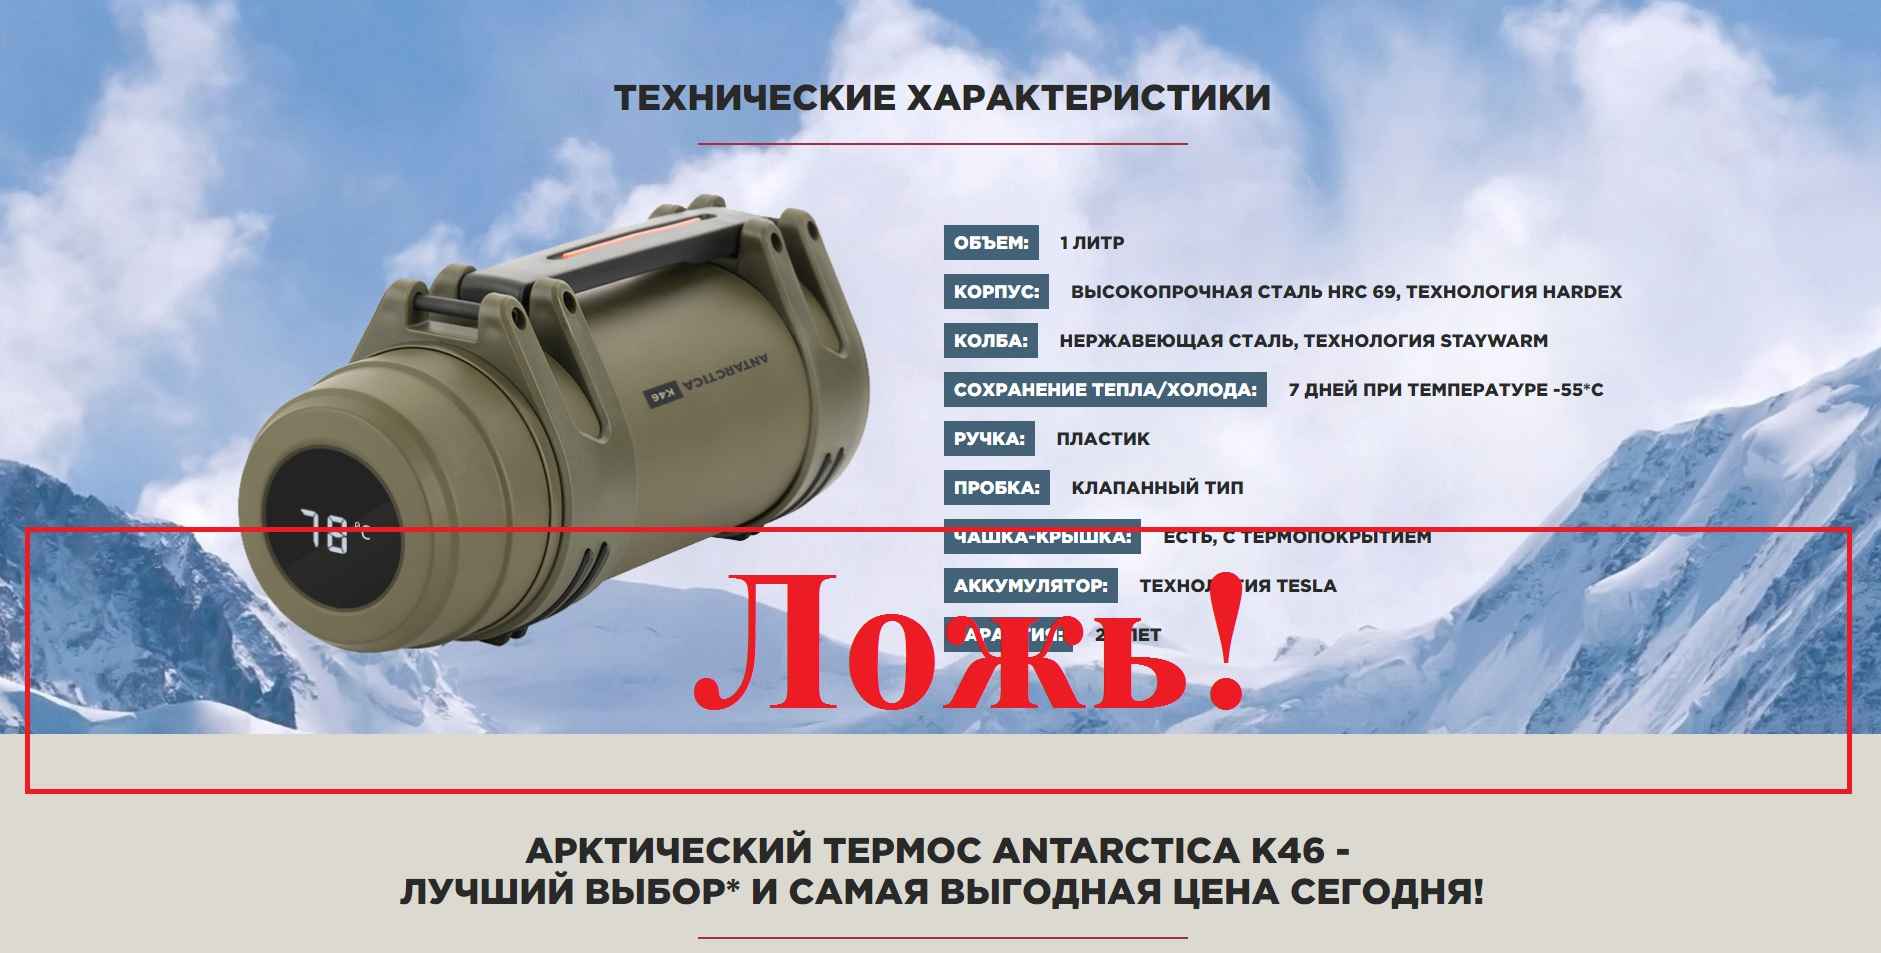 Арктический термос ANTARCTICA K46 – отзывы клиентов